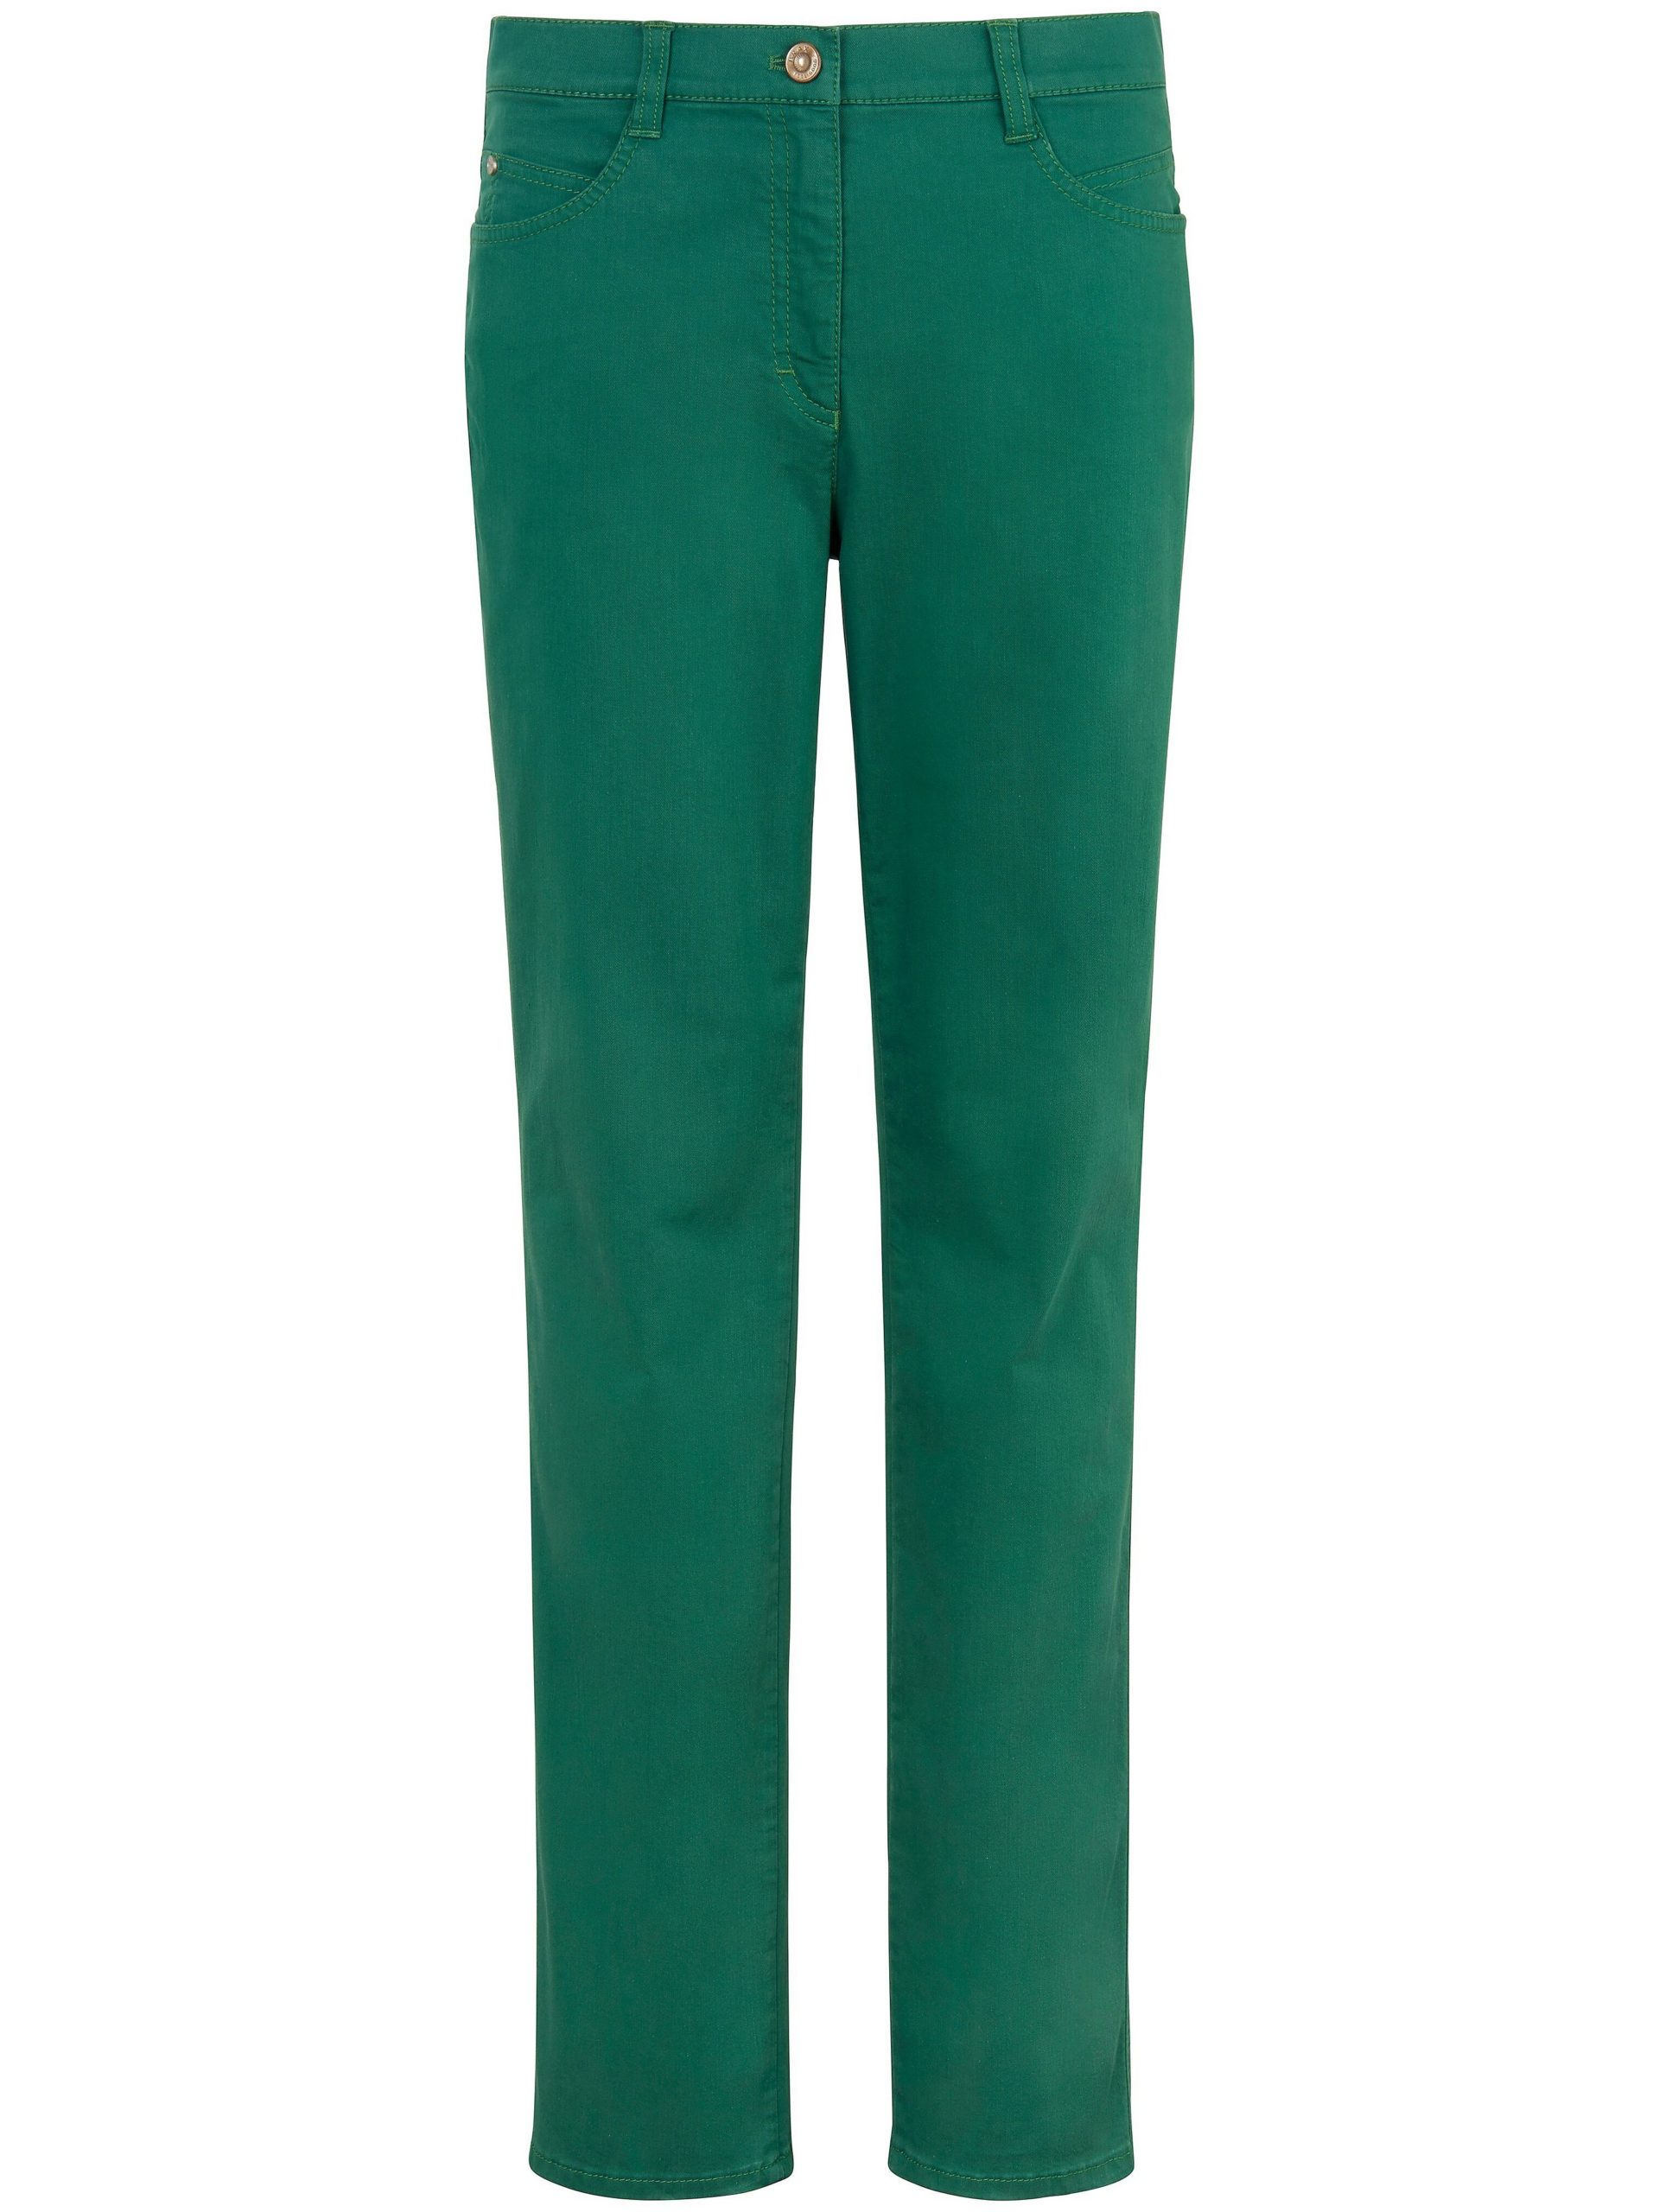 Feminine fit jeans, model Nicola Van Brax Feel Good groen Kopen